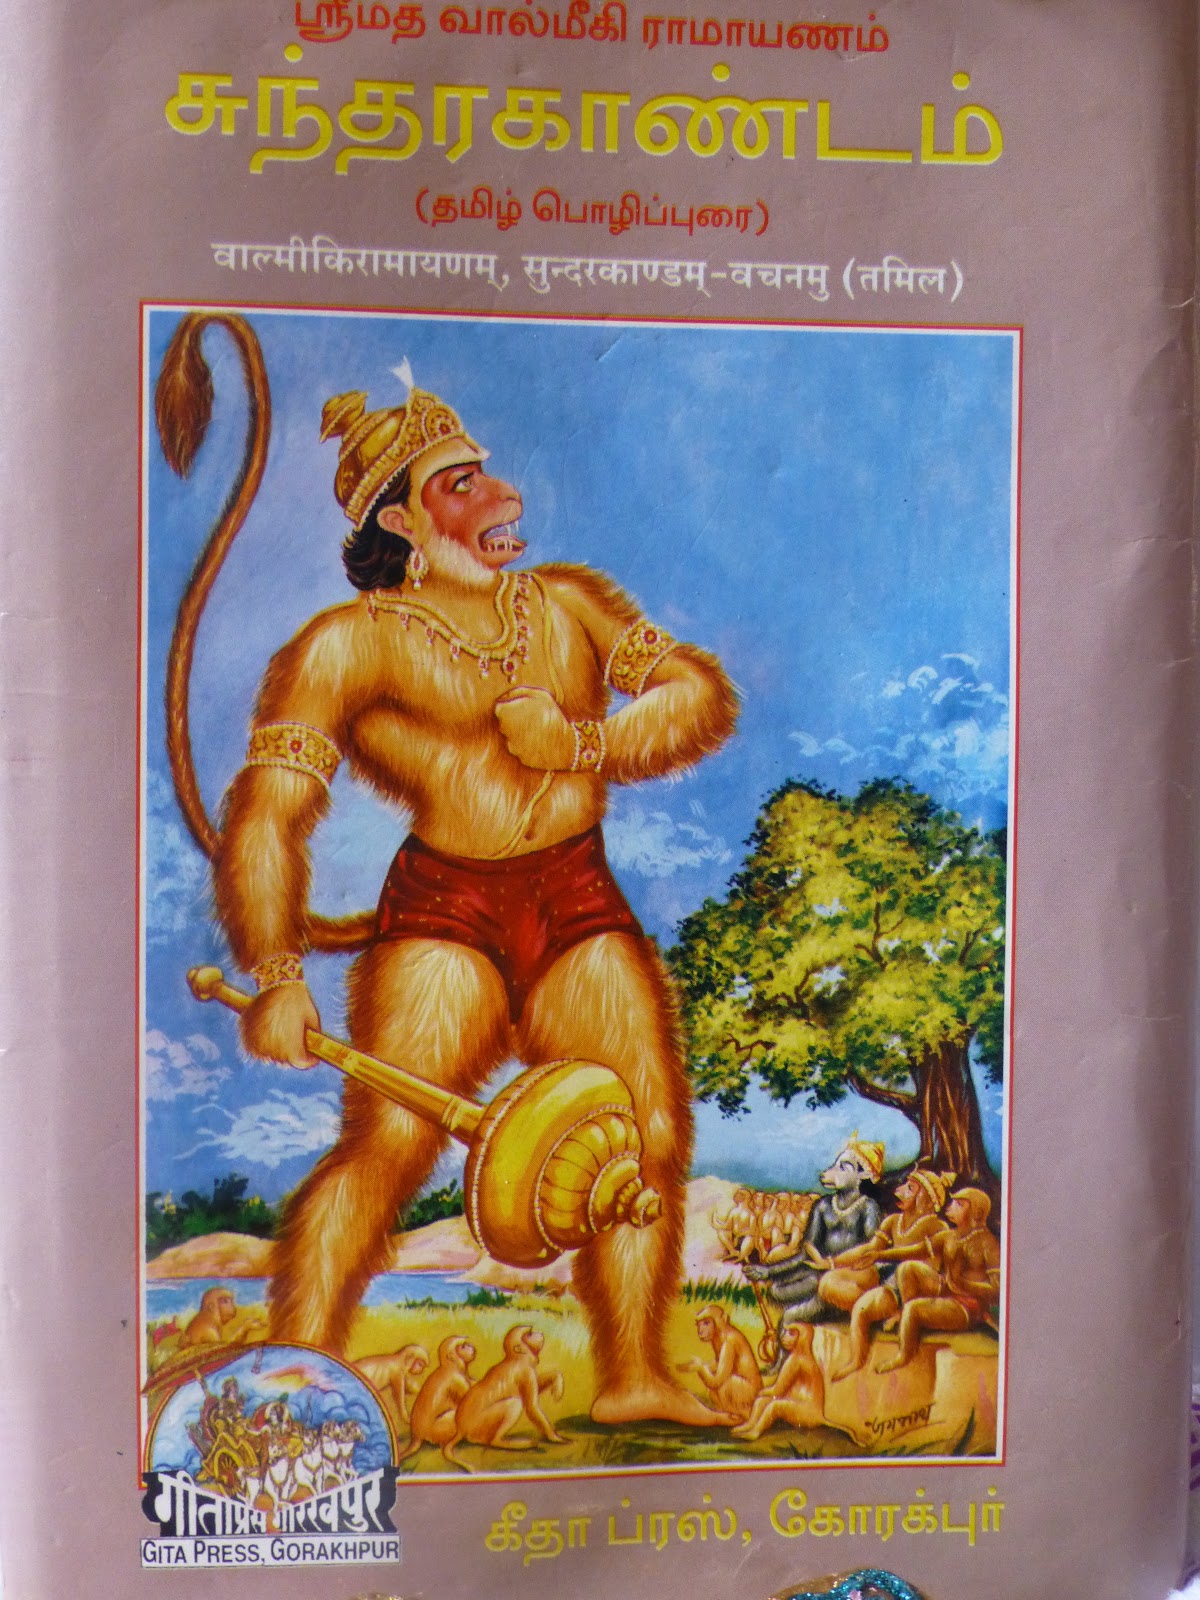 sundarakandam book in tamil pdf download